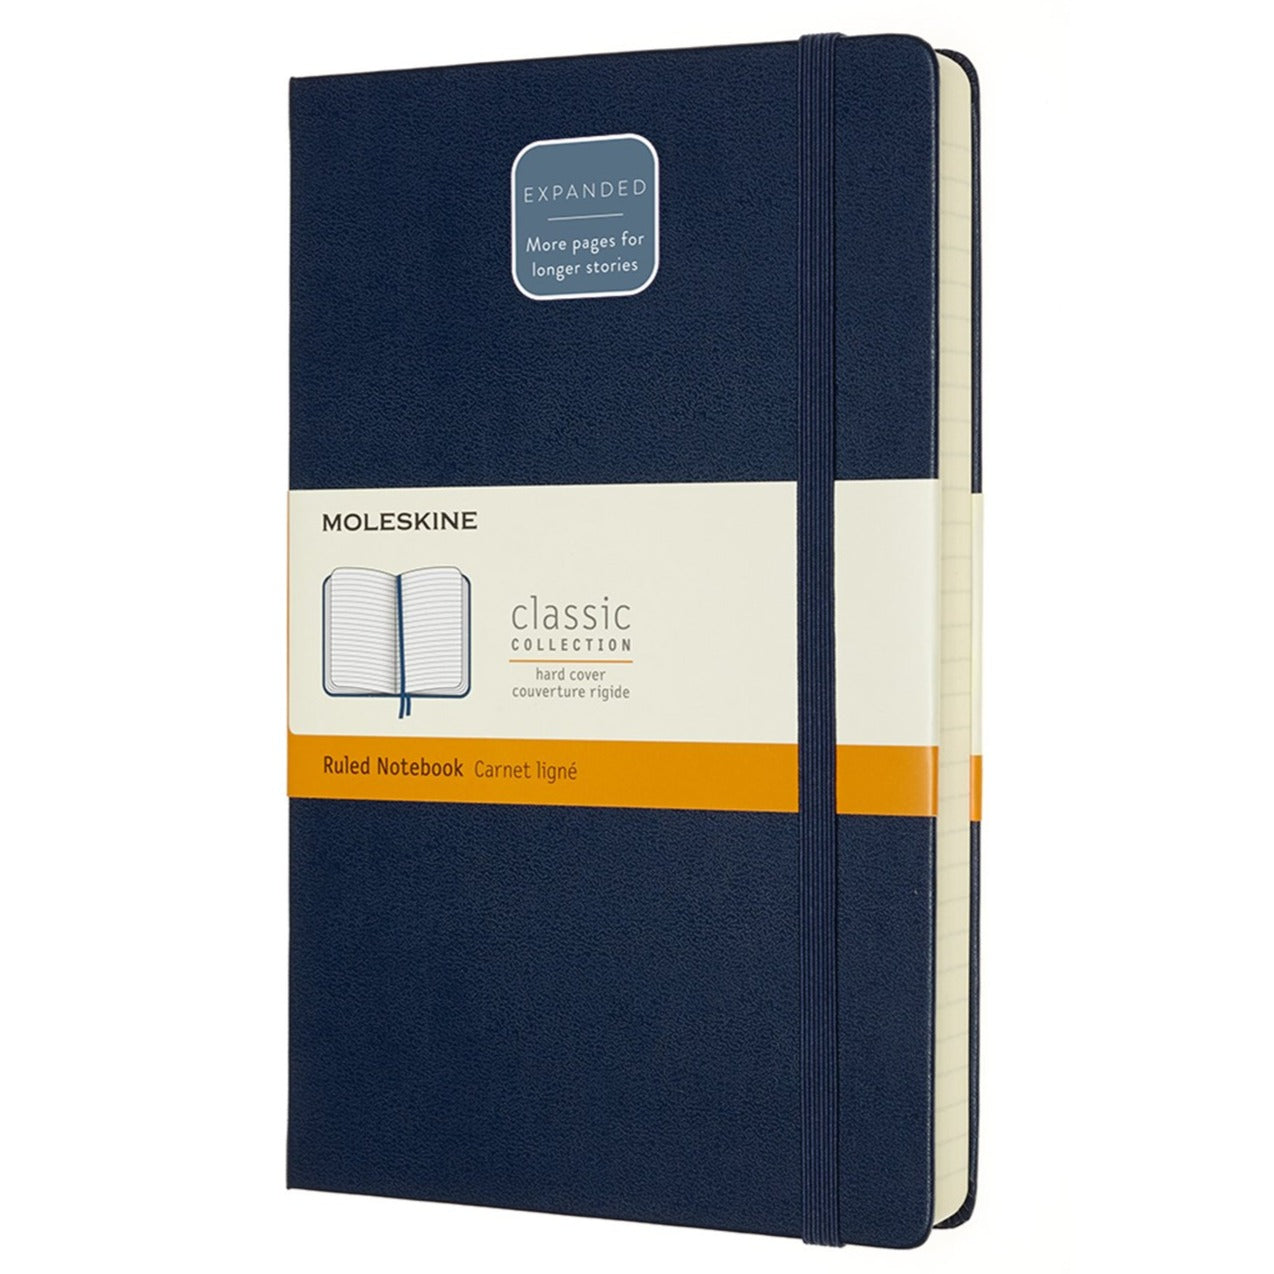 Caderno Clássico Expanded (400 páginas) - Azul Safira